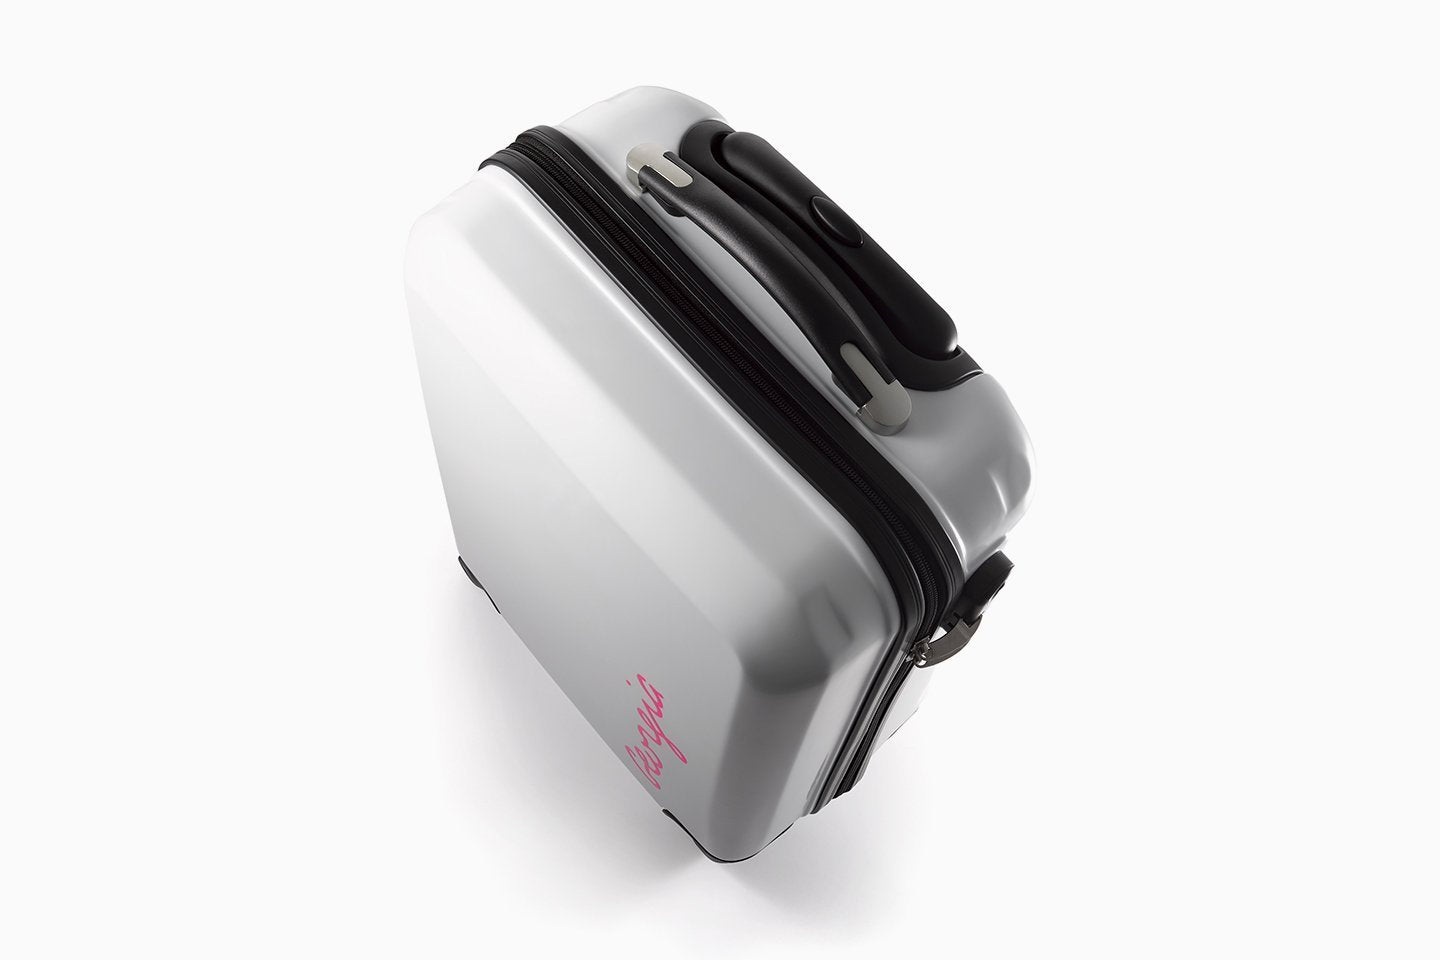 Oficiální kabinový kufr Love Island – personalizovaný